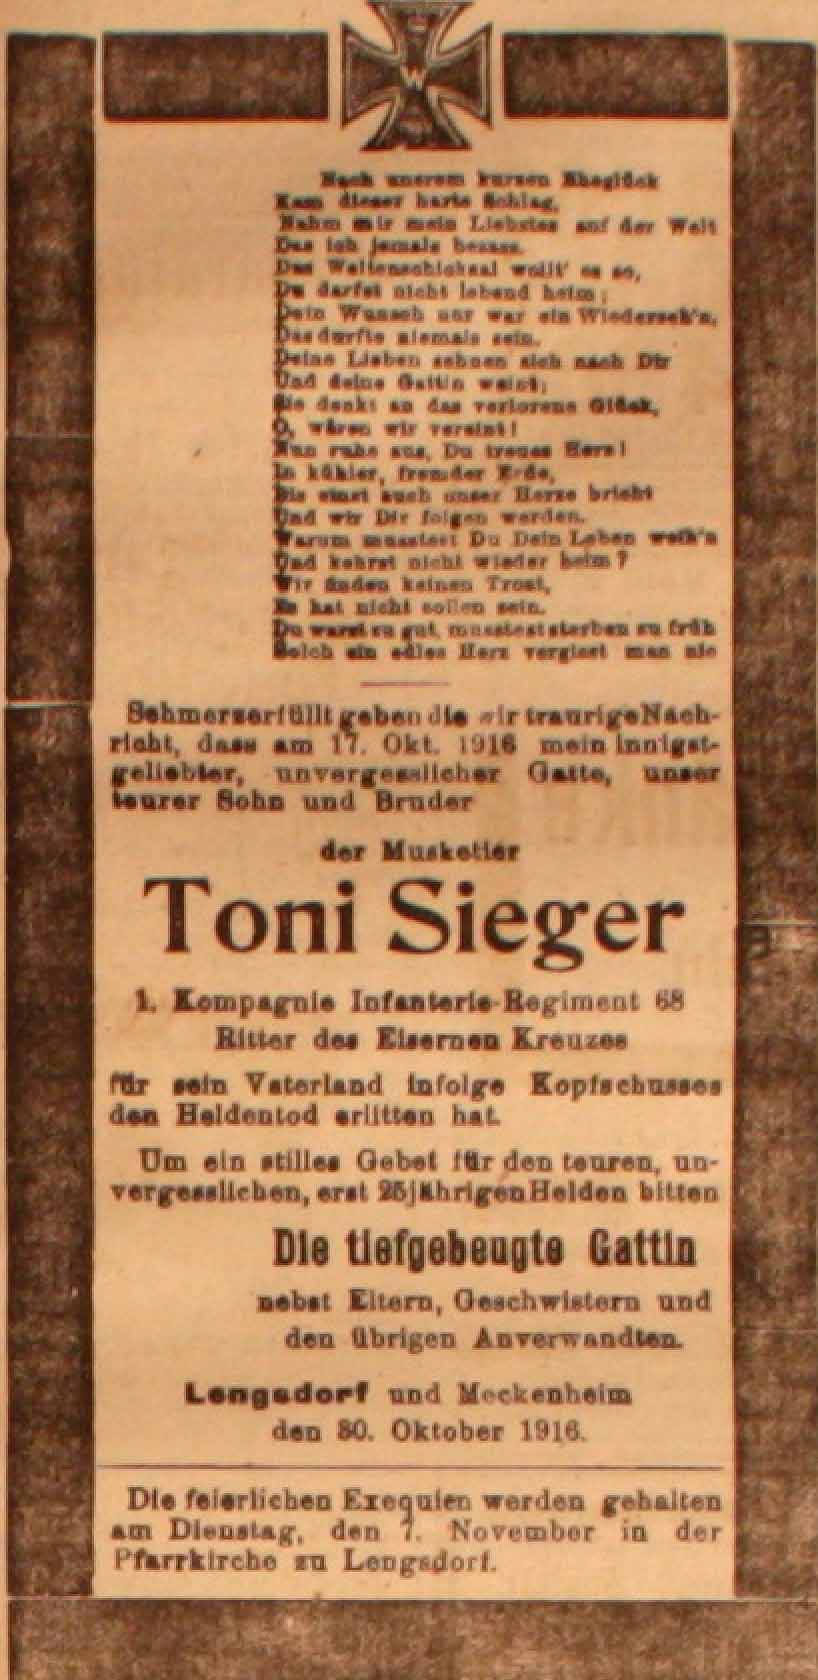 Anzeige in der Deutschen Reichs-Zeitung vom 31. Oktober 1916